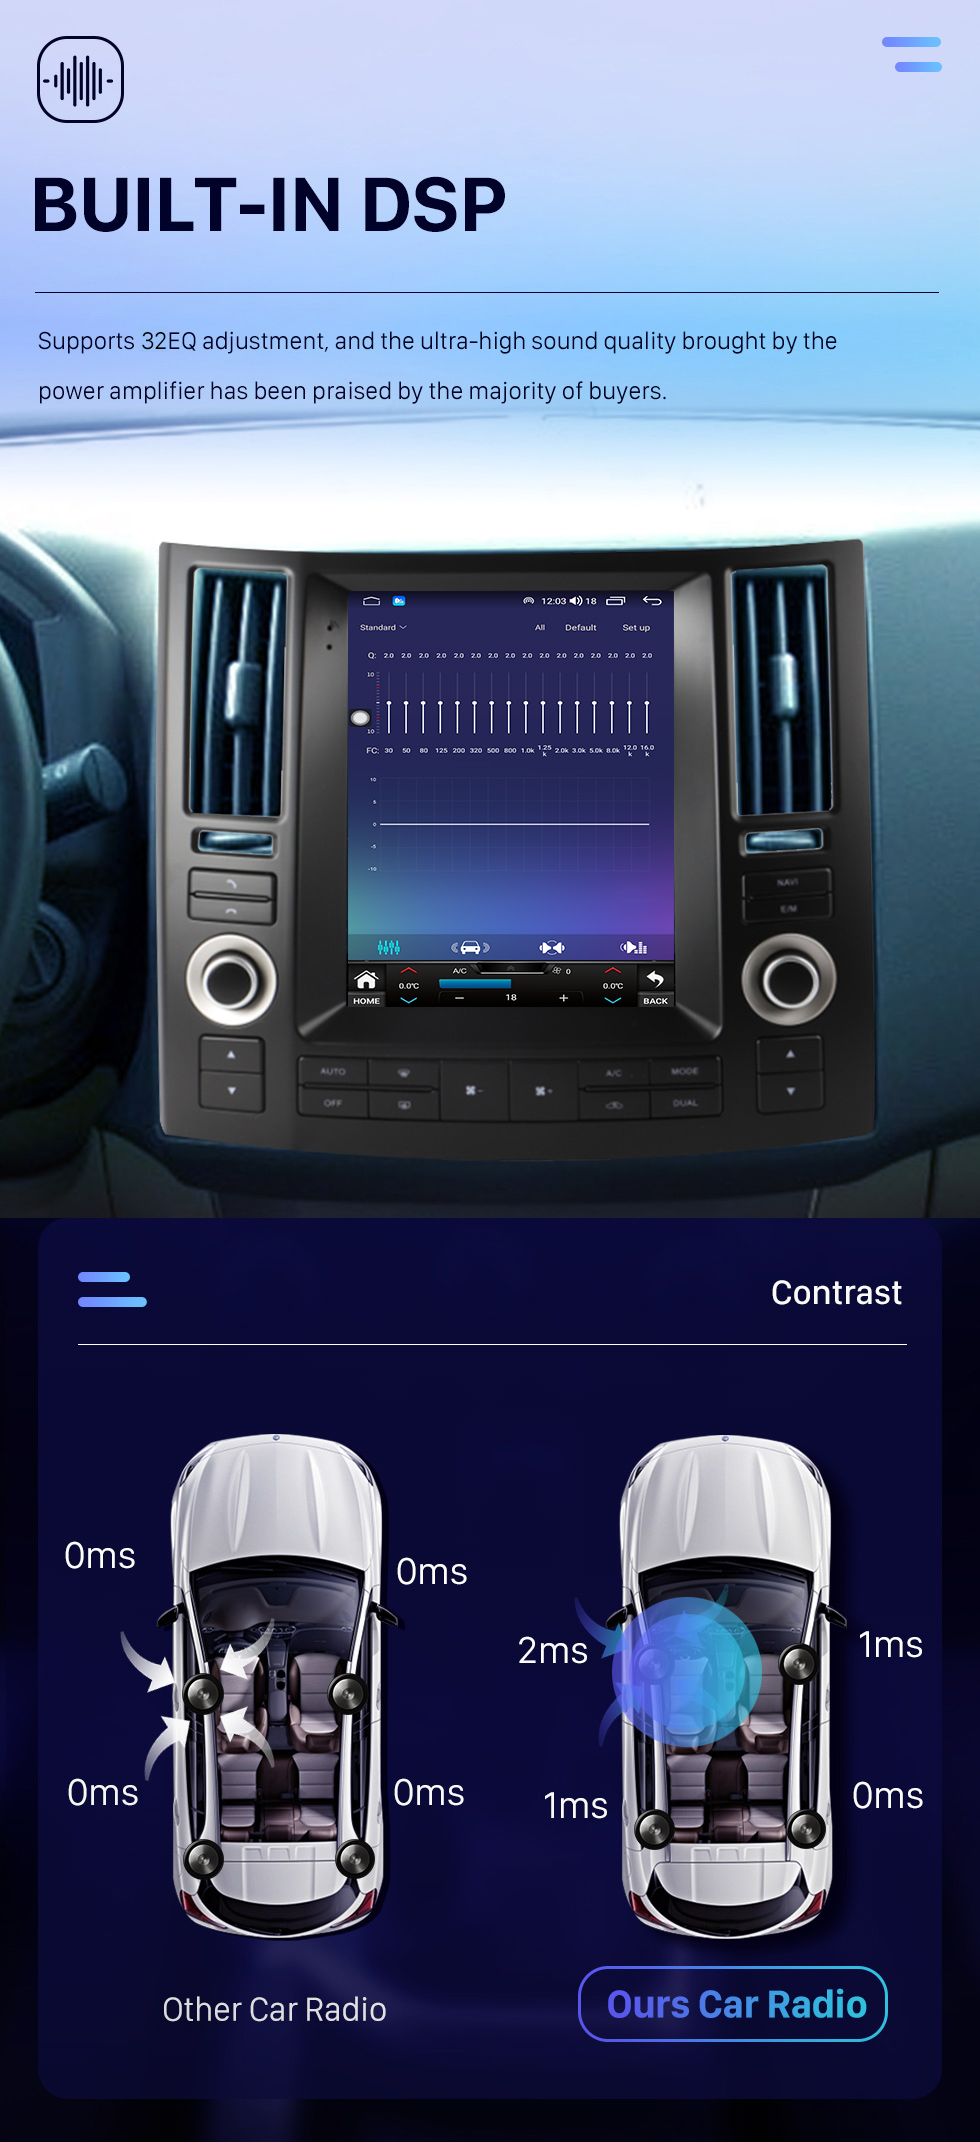 Seicane 9,7 дюйма для 2007-2009 INFINITI FX FX35 FX45 Android 10.0 Головное устройство GPS-навигация USB-радио с USB Bluetooth WIFI Поддержка DVR OBD2 TPMS Управление рулевым колесом